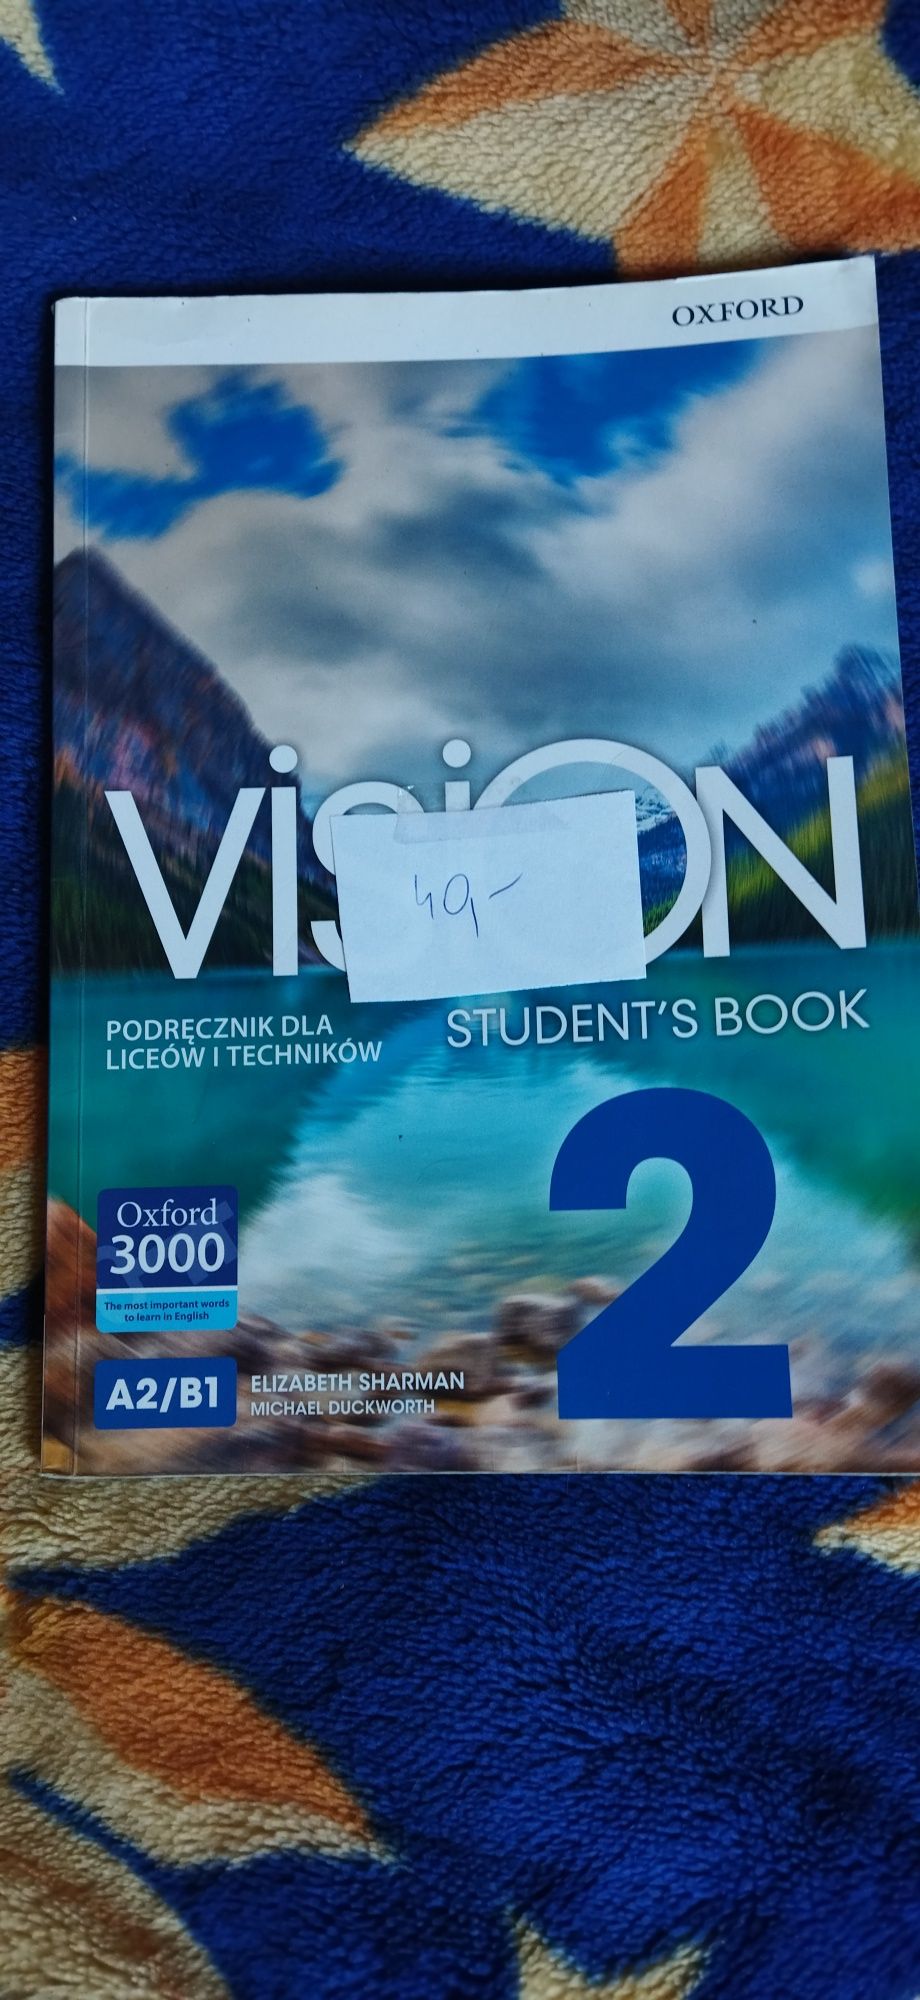 Podręcznik do angielskiego Vision 2